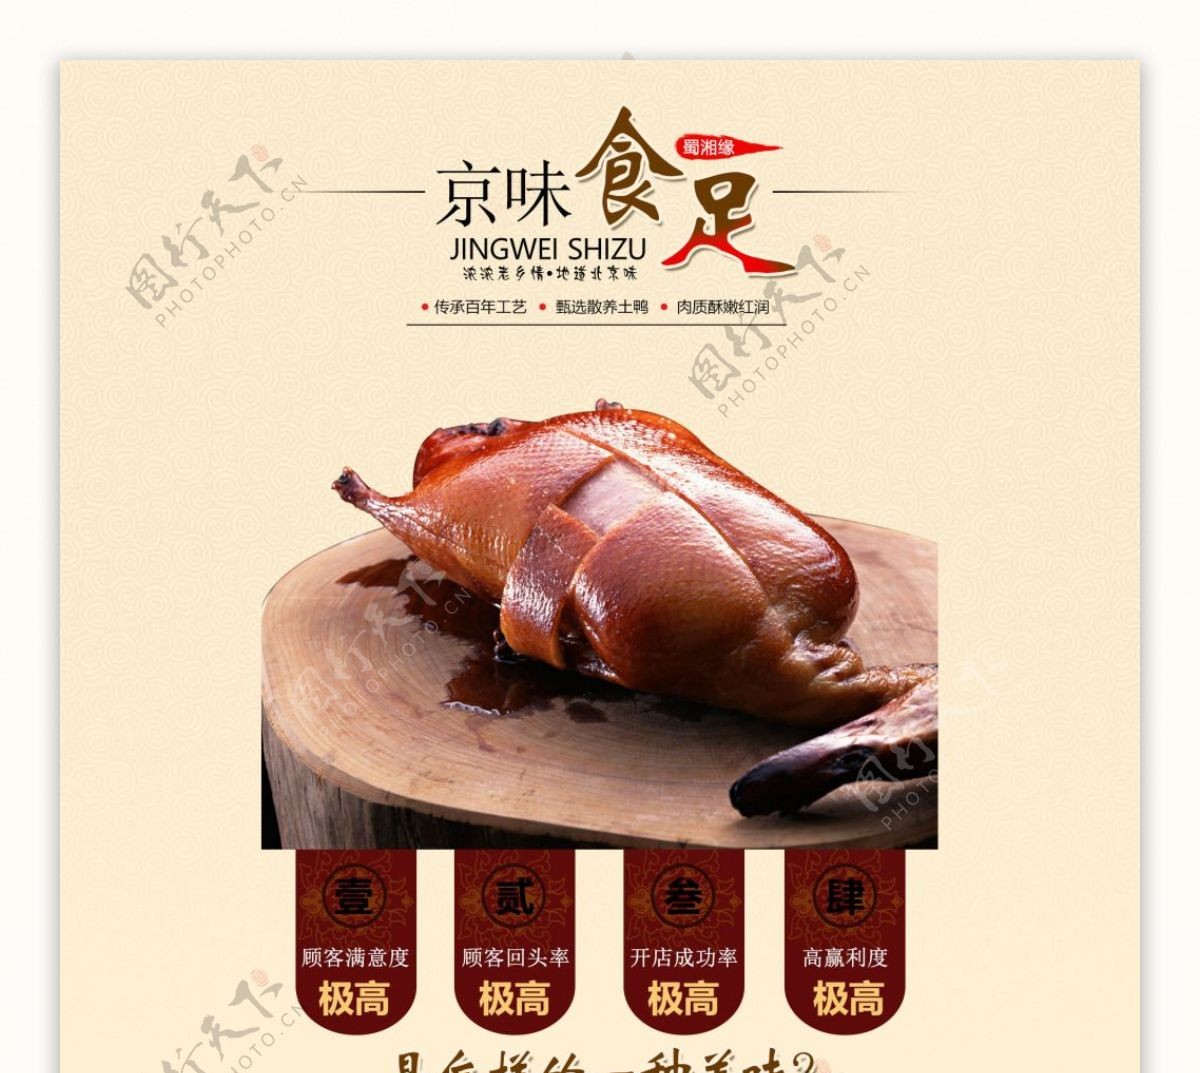 北京烤鸭专题